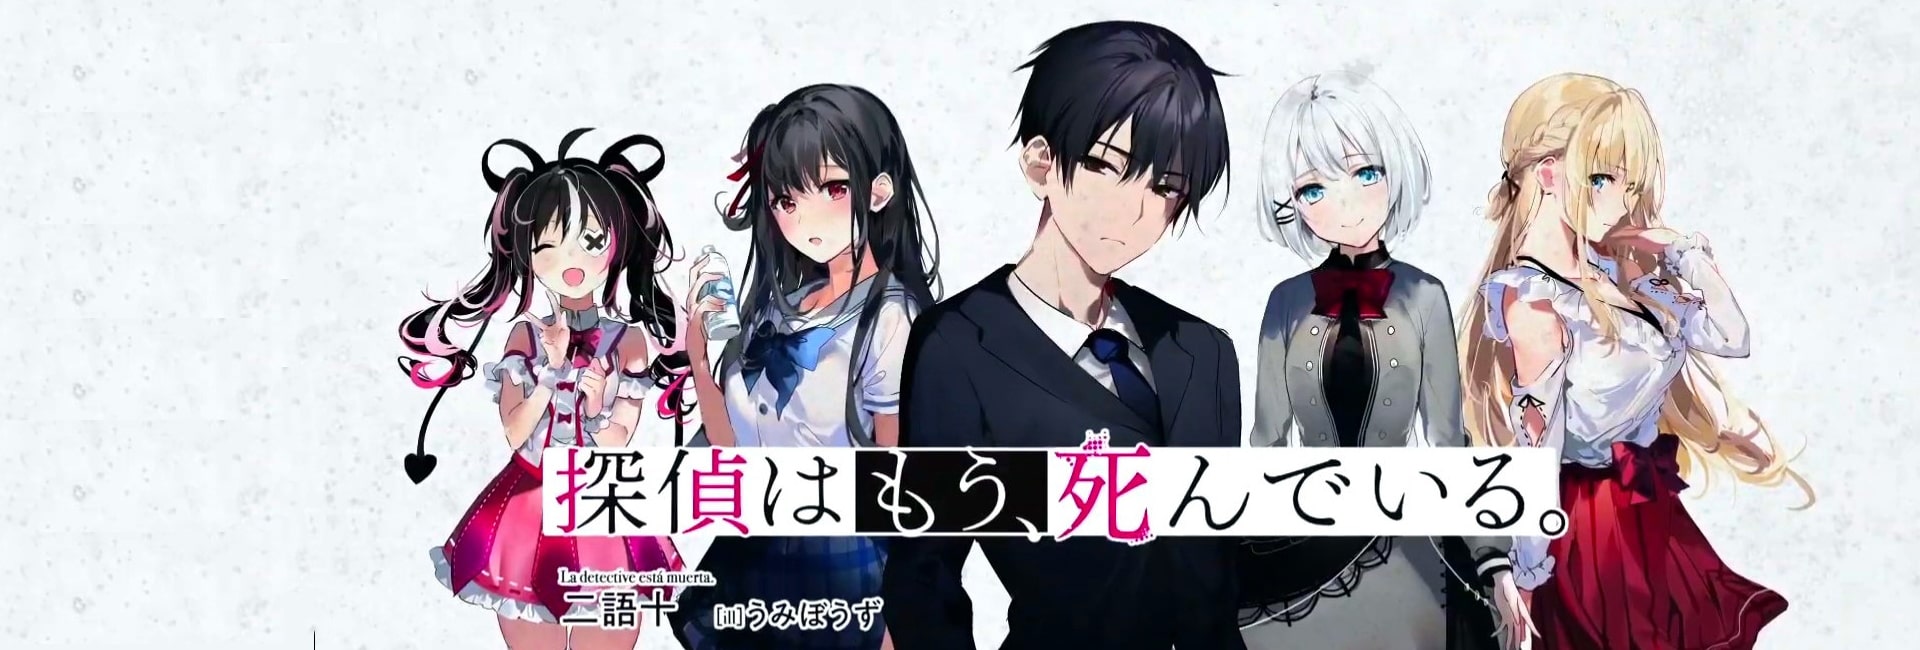 Tantei wa Mou Shindeiru – Anime de mistério tem anuncio de 2º